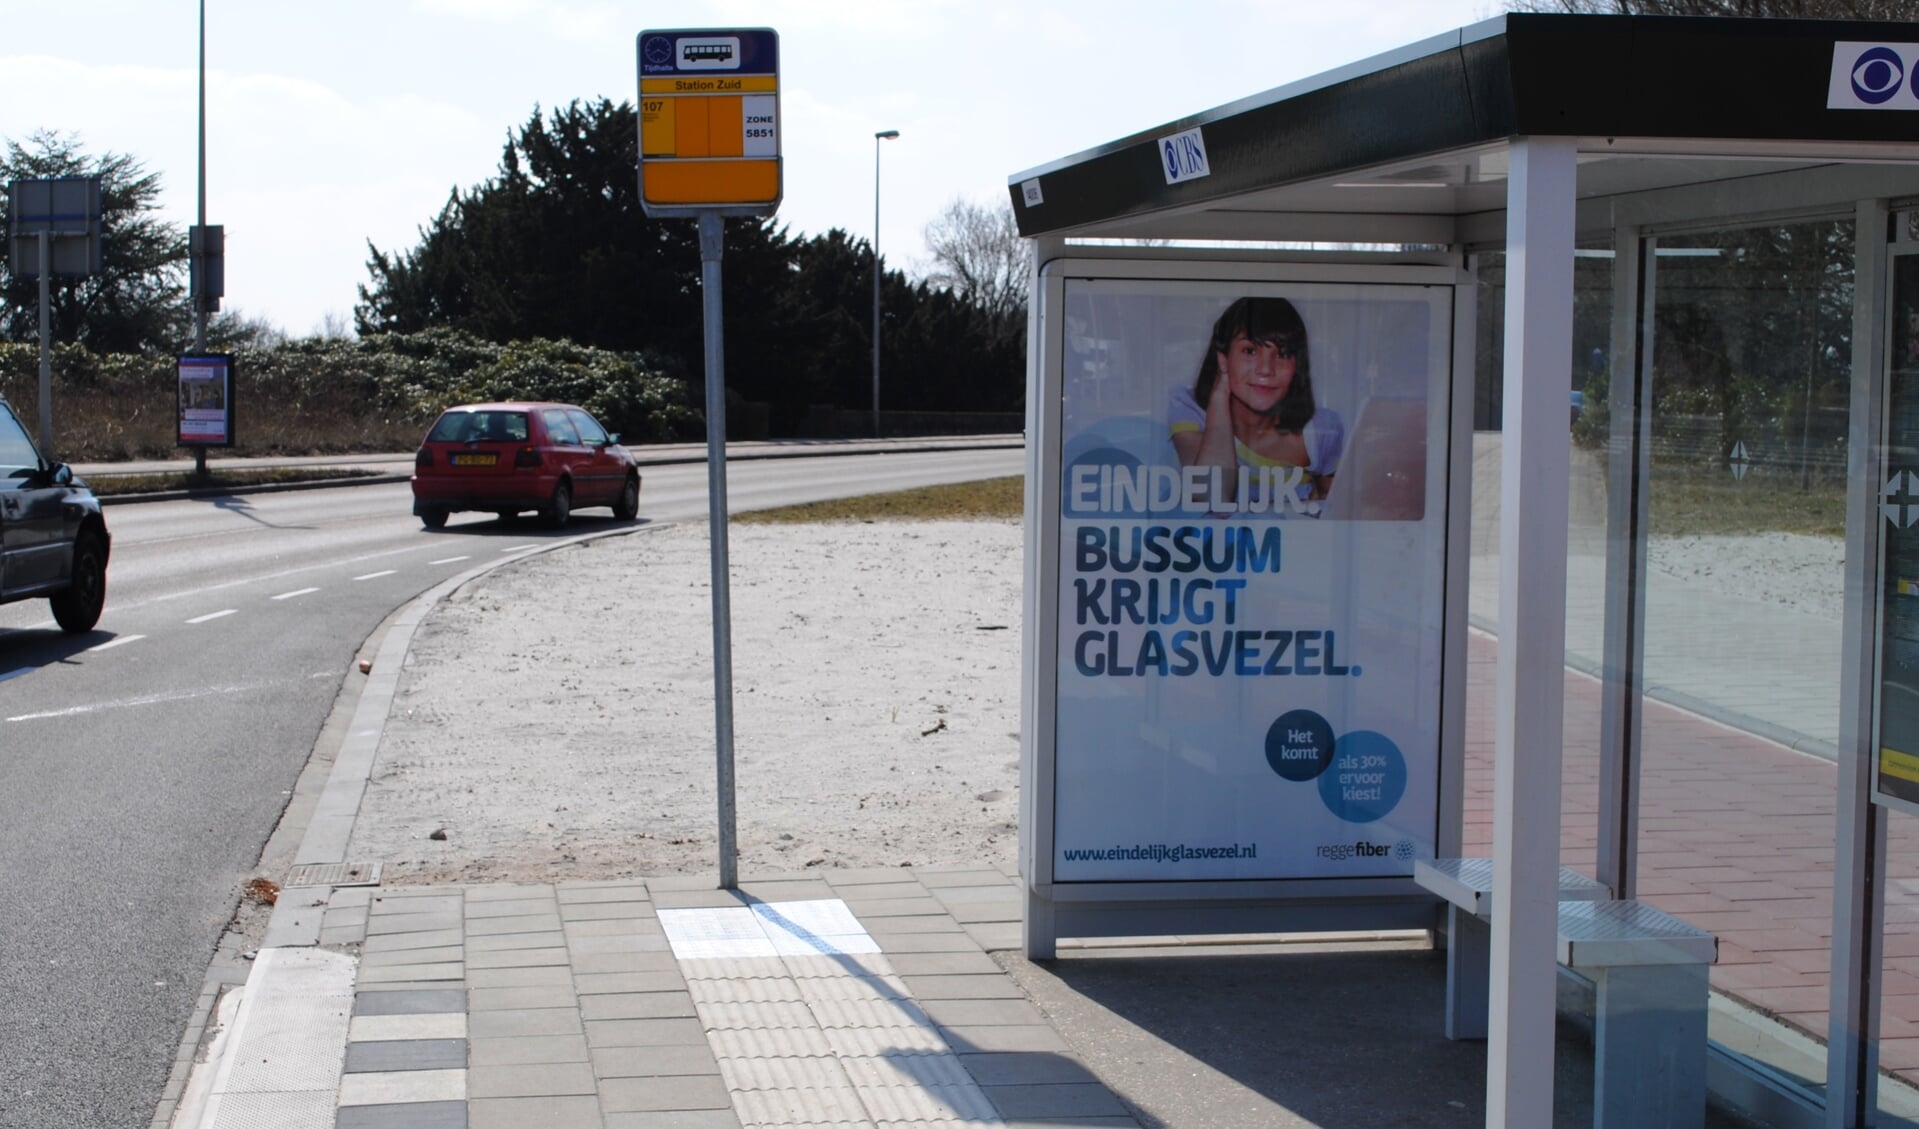 In heel Bussum wordt al reclame gemaakt voor de komst van glasvezel. 